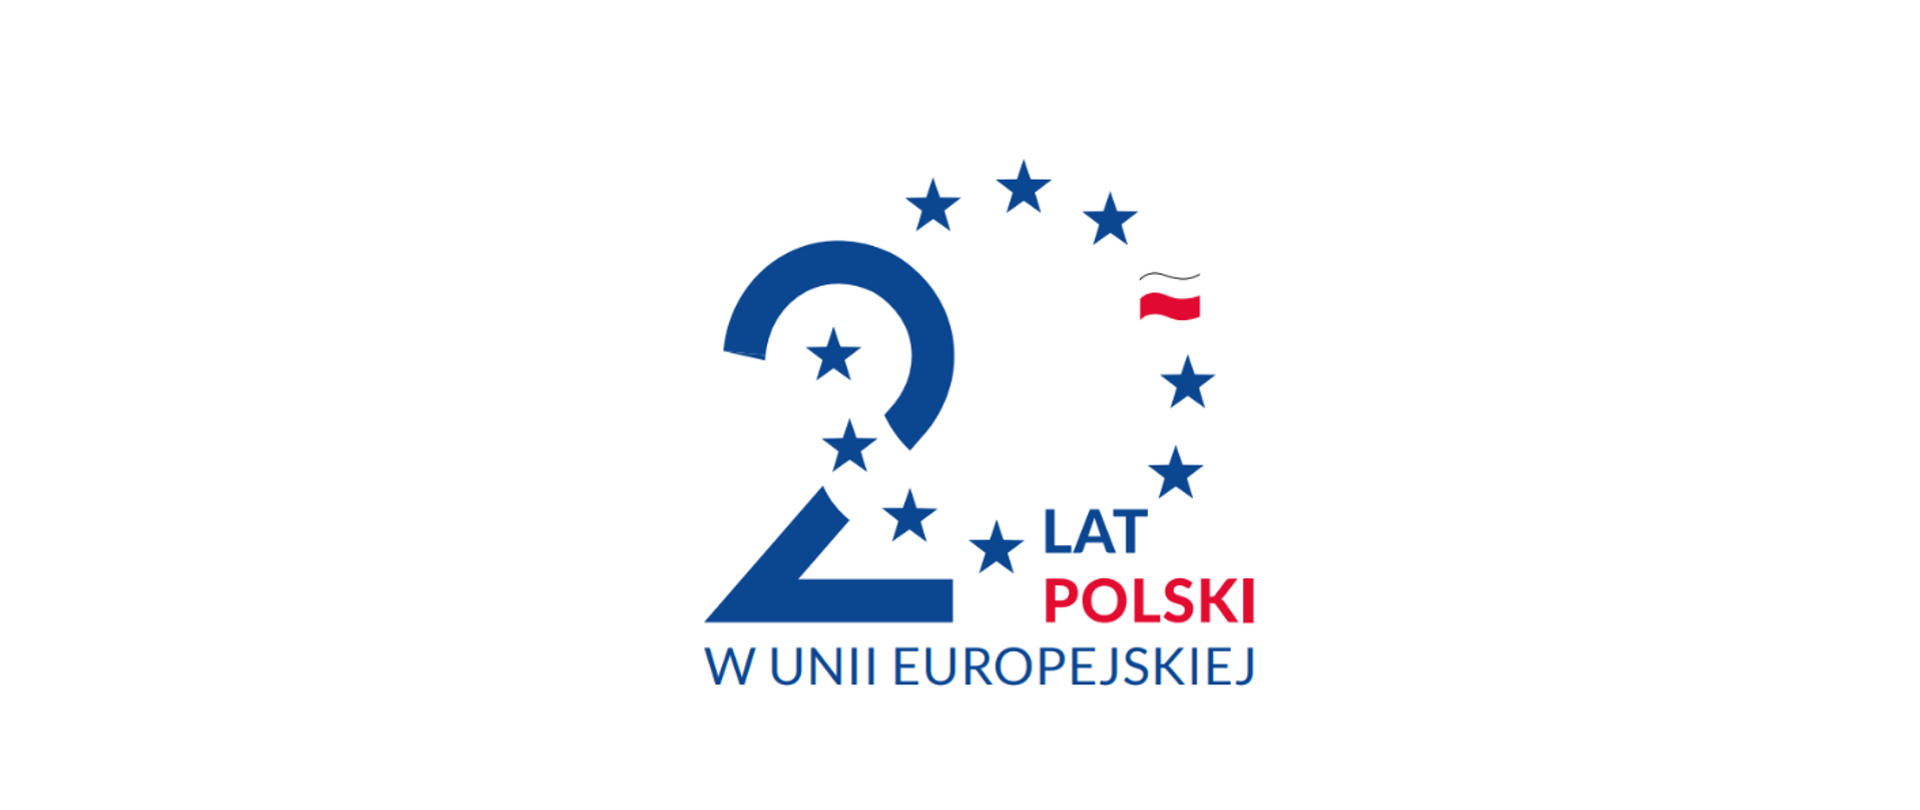 na obrazku rządowe logo i hasło stworzone na potrzeby obchodów 20-lecia Polski w UE, których rozpoczęcie przypada na dzień 1 maja 2024 roku. 